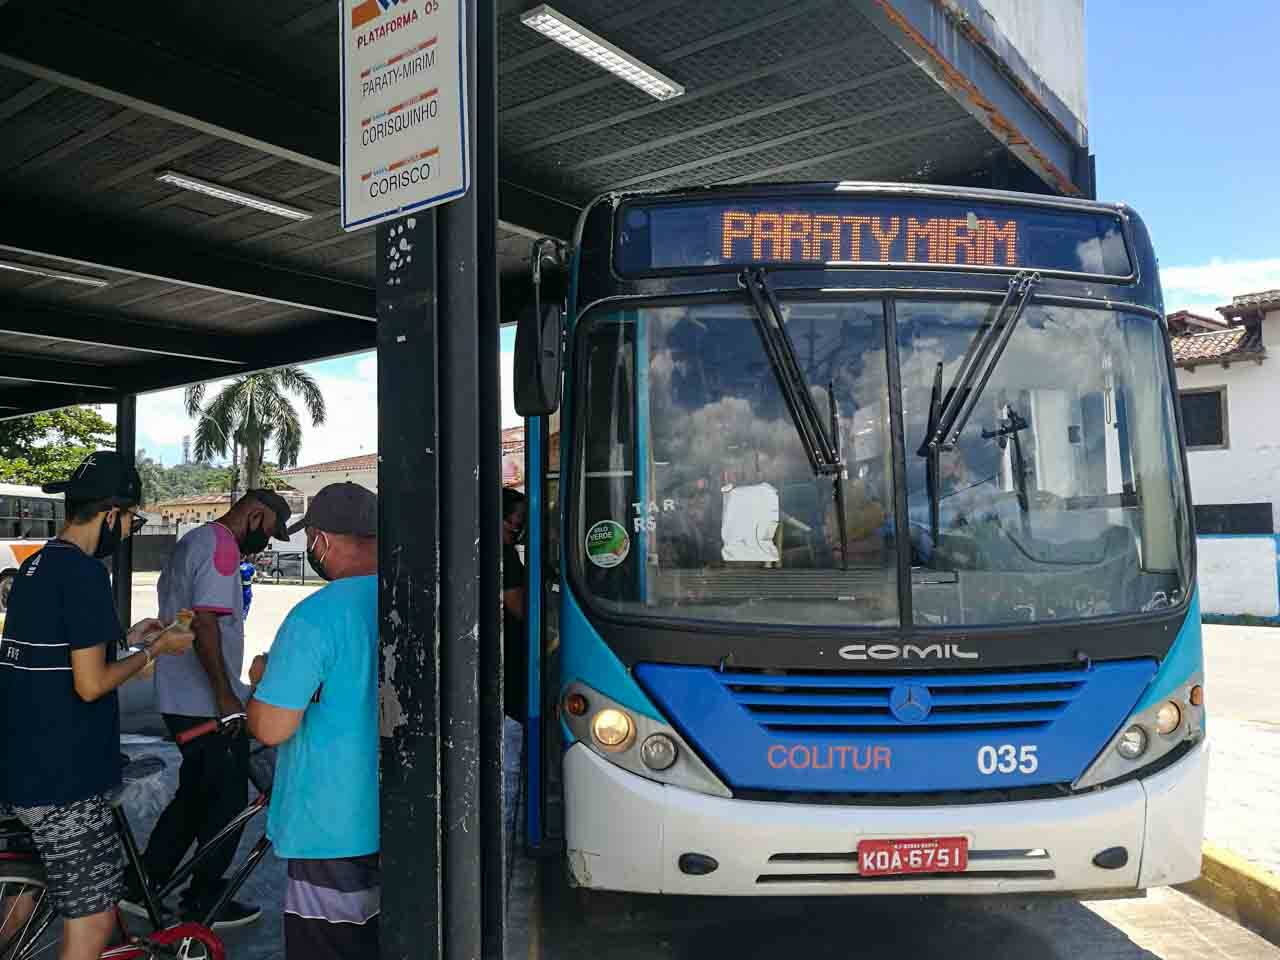 Dica de como chegar no Saco do Mamanguá: Ônibus da Rodoviária de Paraty para Paraty Mirim, demora cerca de 40 minutos. 